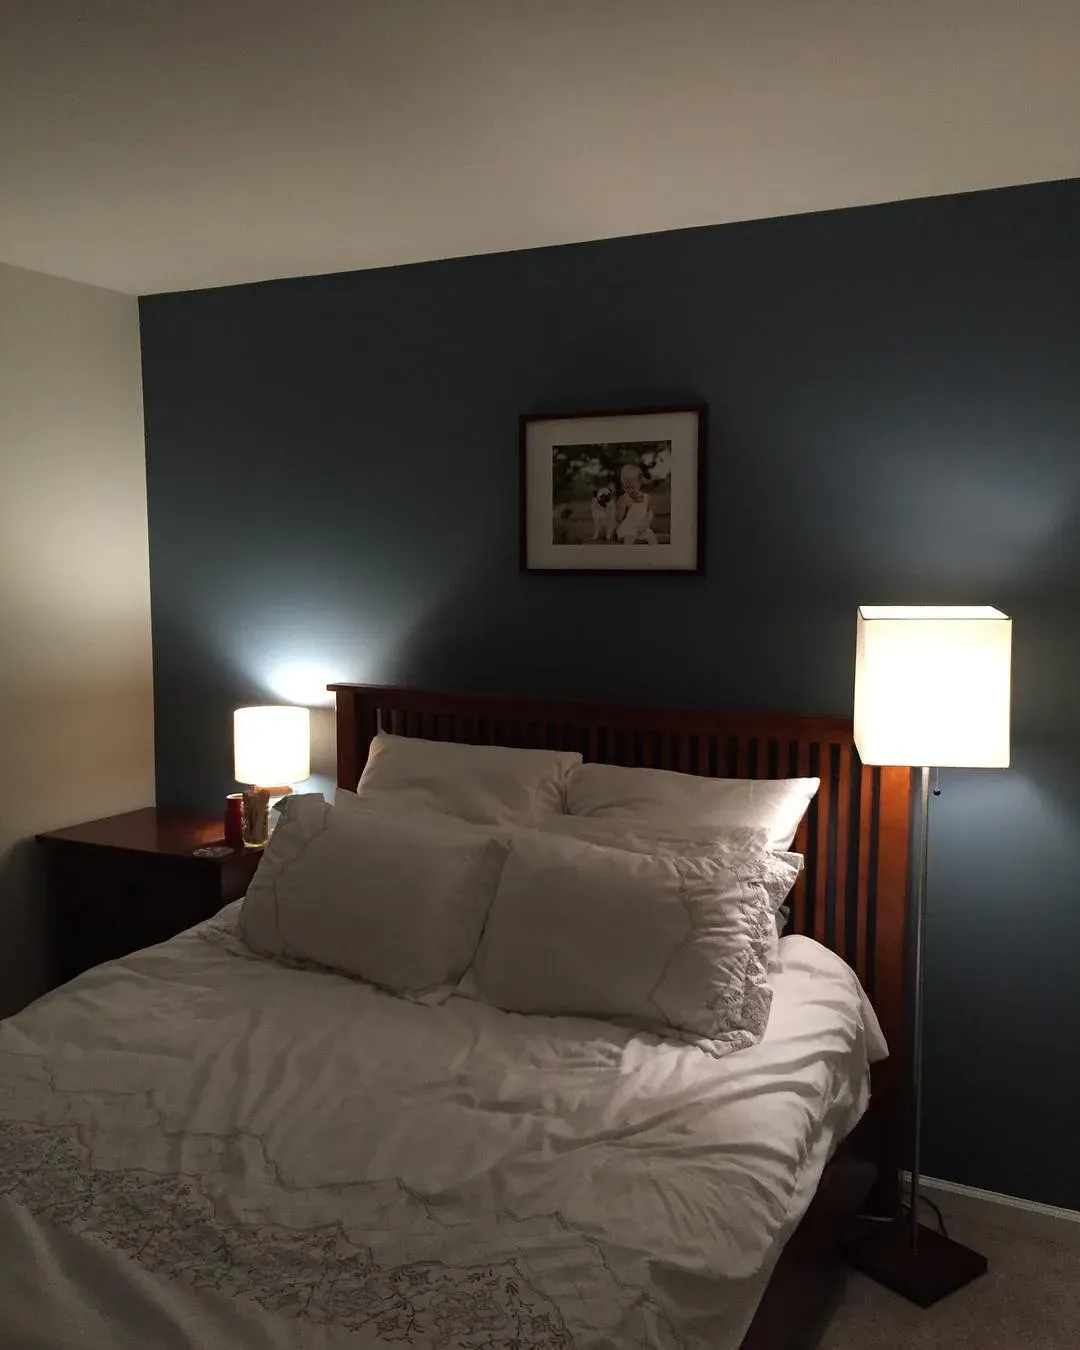 Behr Atlantic Shoreline bedroom color review